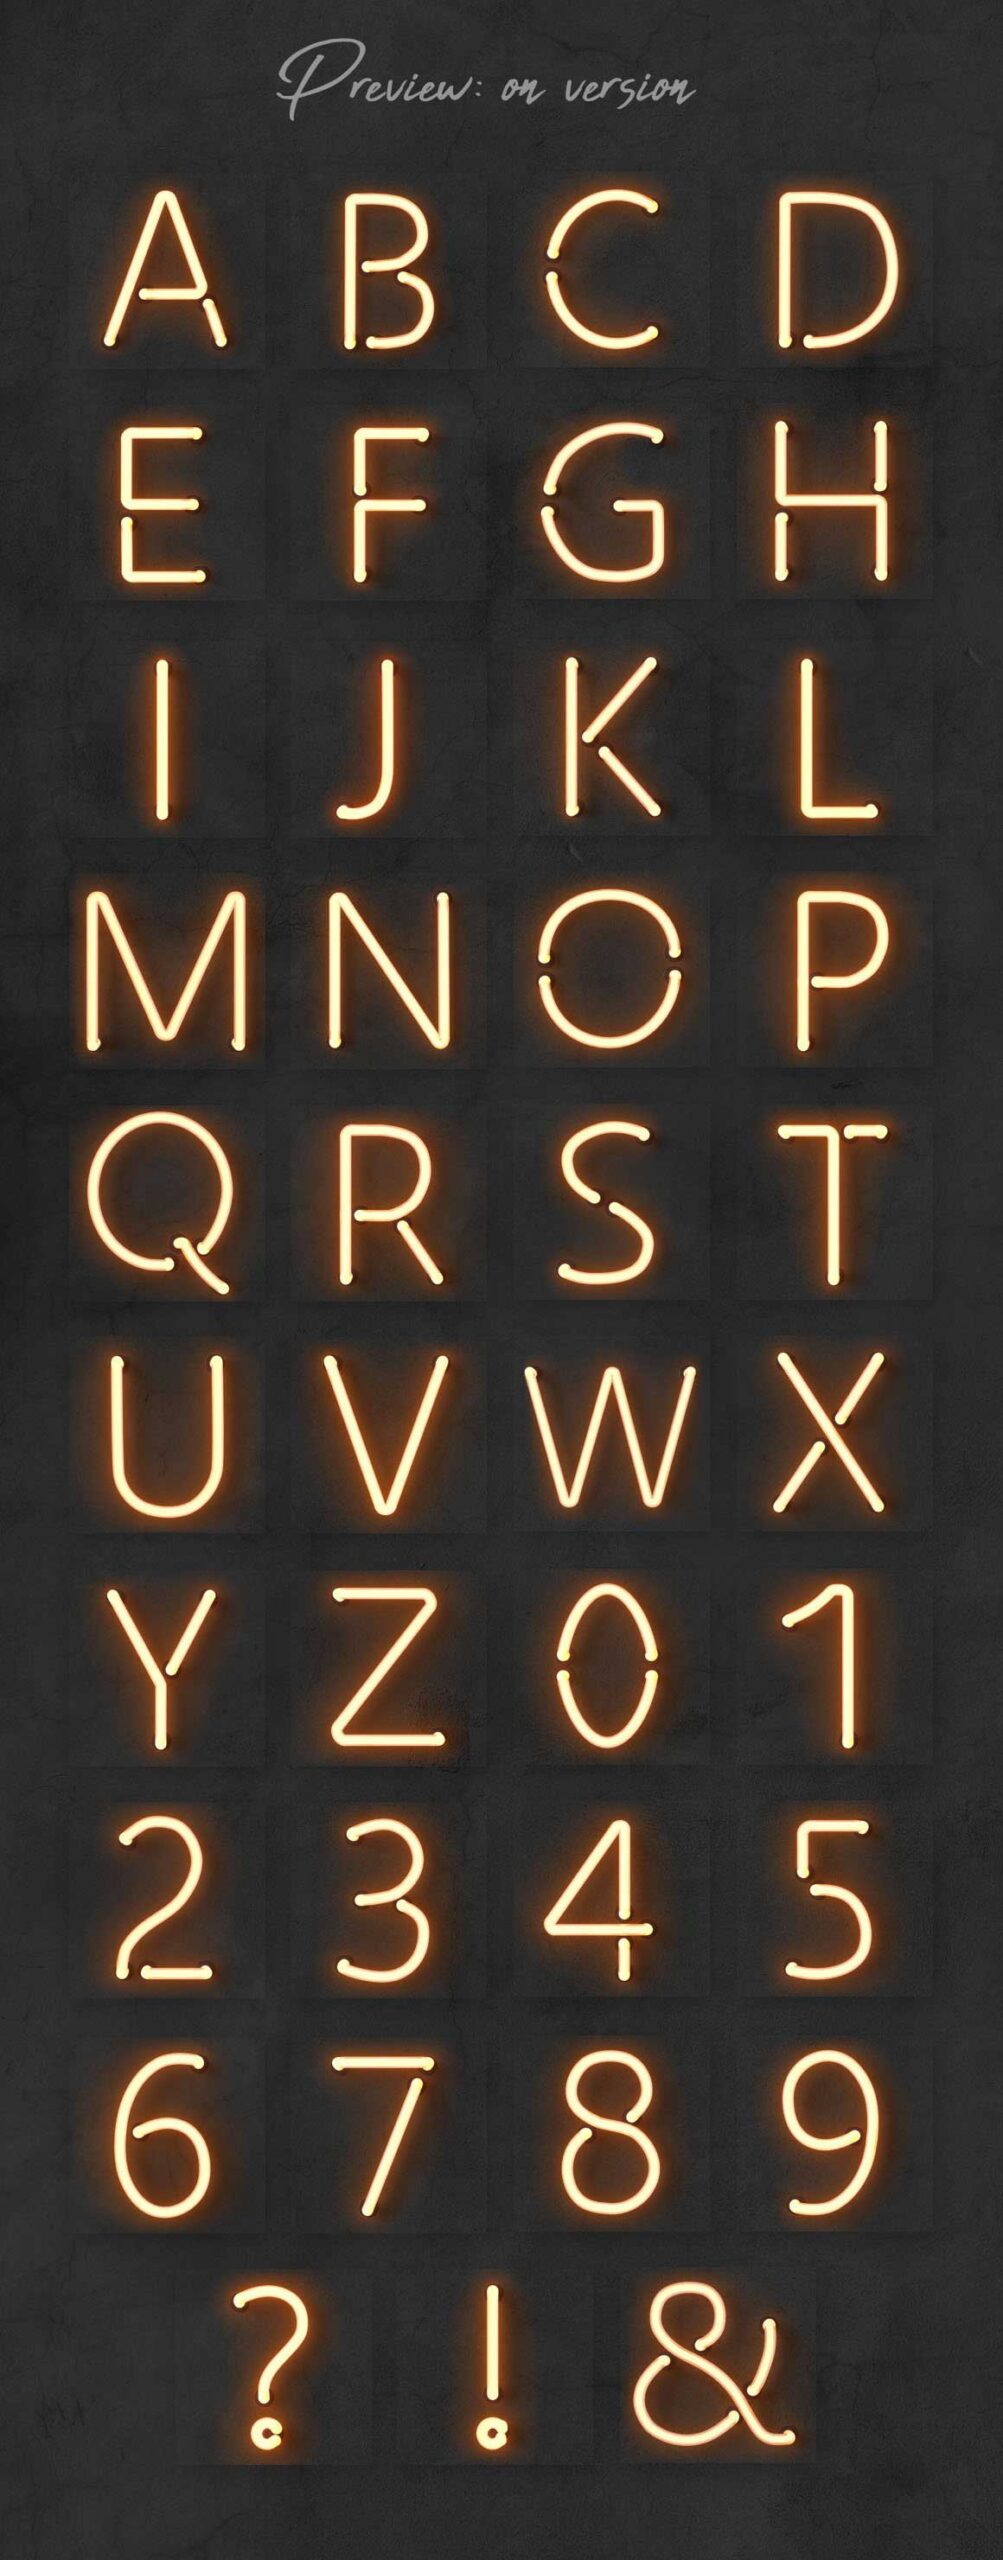 دانلود کیت الفبای نئون Neon Alphabet